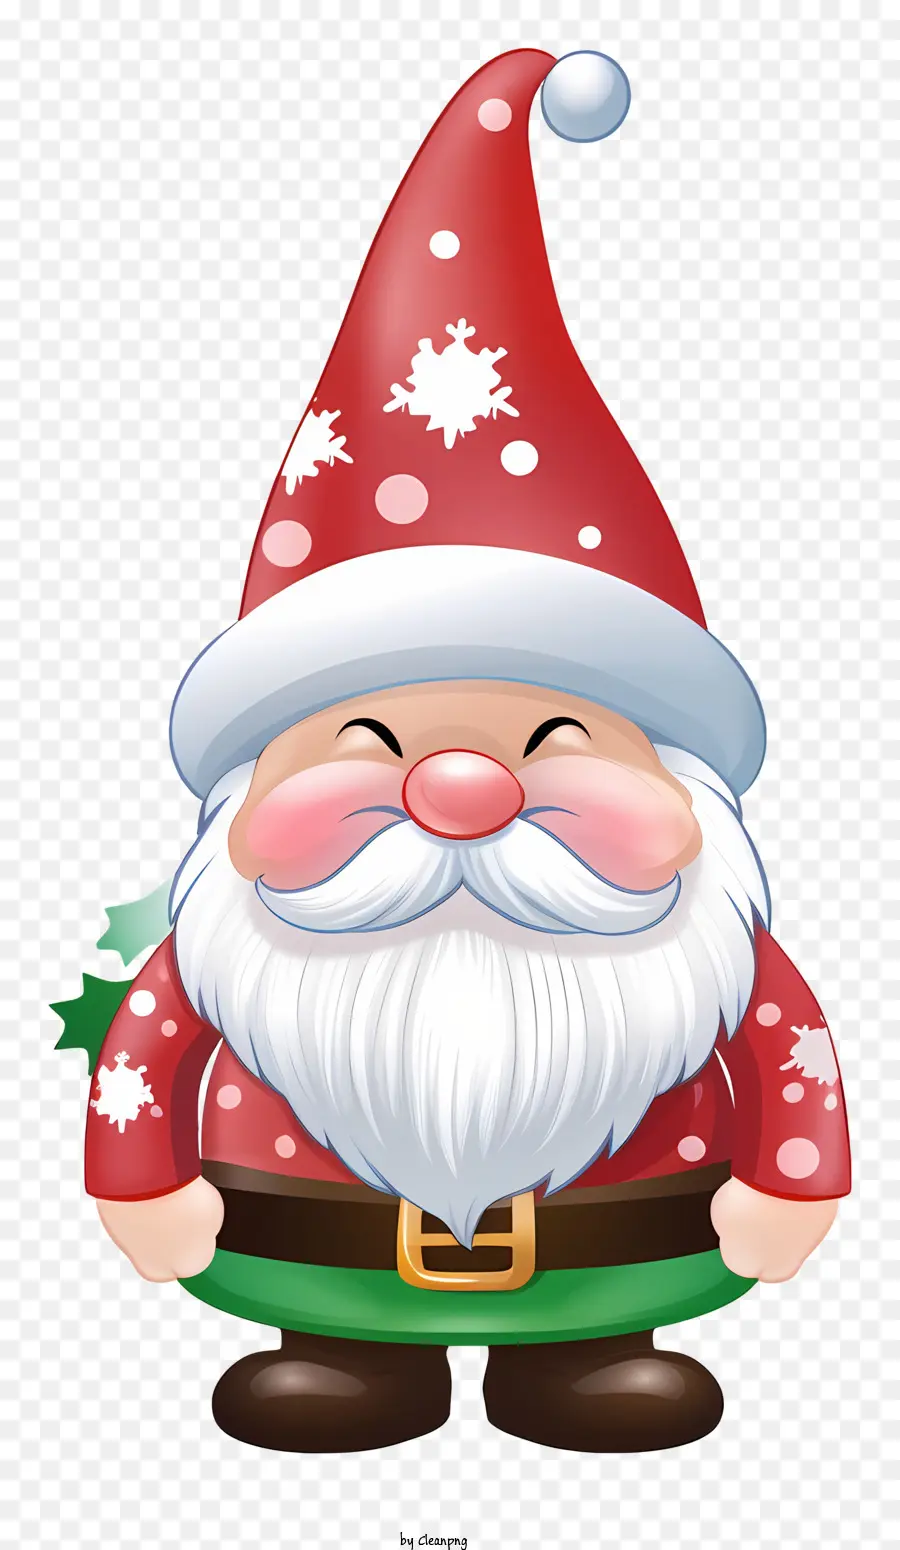 Cartoon Santa Claus Santa Claus Outfit grün und rote Jacke weiße Hemdgrün und rote Kappe - Cartoon Santa Claus in Schwarz -Weiß -Kleidung